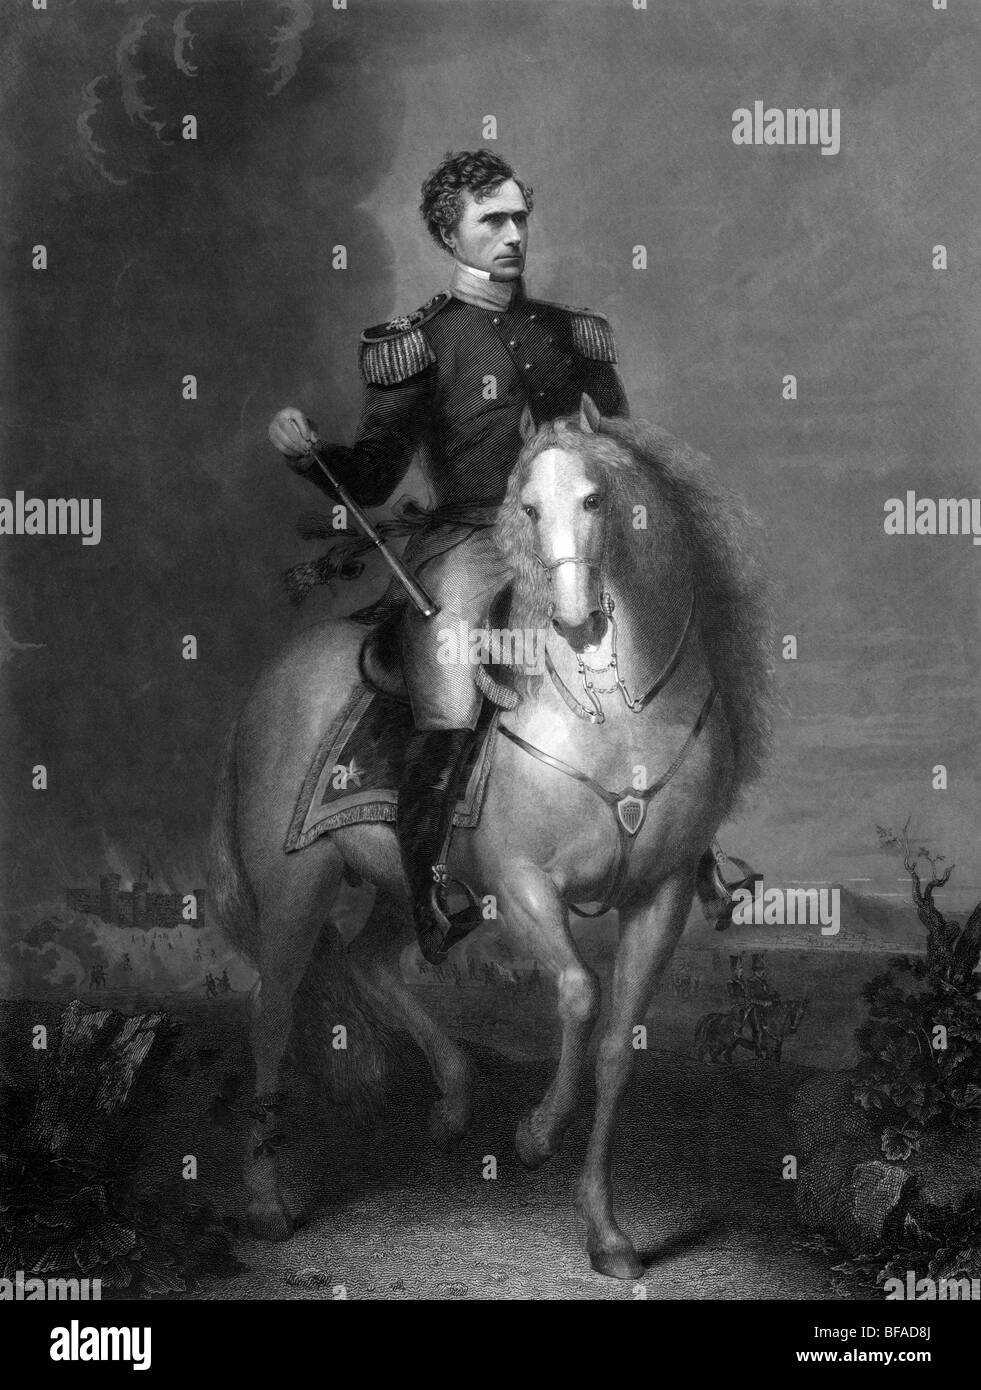 Hochformat ca. 1852 von Franklin Pierce als General auf dem Pferderücken - Pierce (1804-1869) war der 14. US-Präsident (1853-1857). Stockfoto